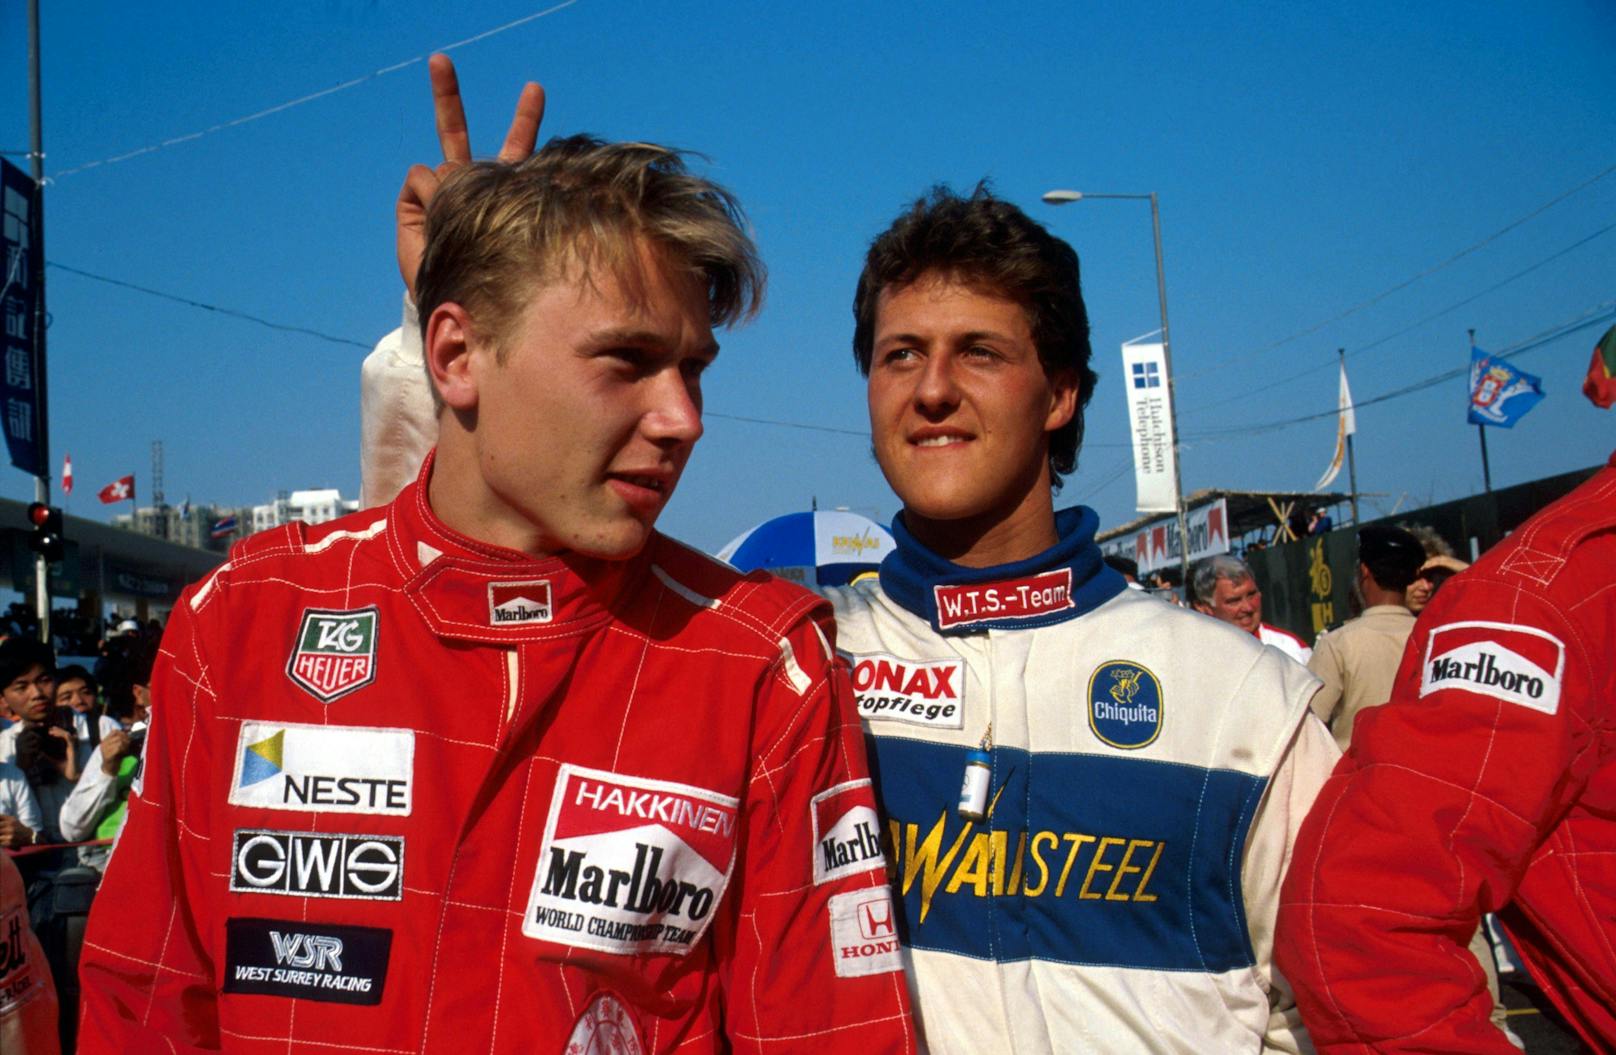 Wenige Wochen später wurde er wegen einer um wenige Millimeter zu dünnen Bodenplatte in Belgien disqualifiziert. 1997 rammte Schumacher Jacques Villeneuve von der Strecke. Die Strafe der FIA fiel hart aus: Alle WM-Punkte und der Vize-Weltmeistertitel wurden ihm aberkannt.